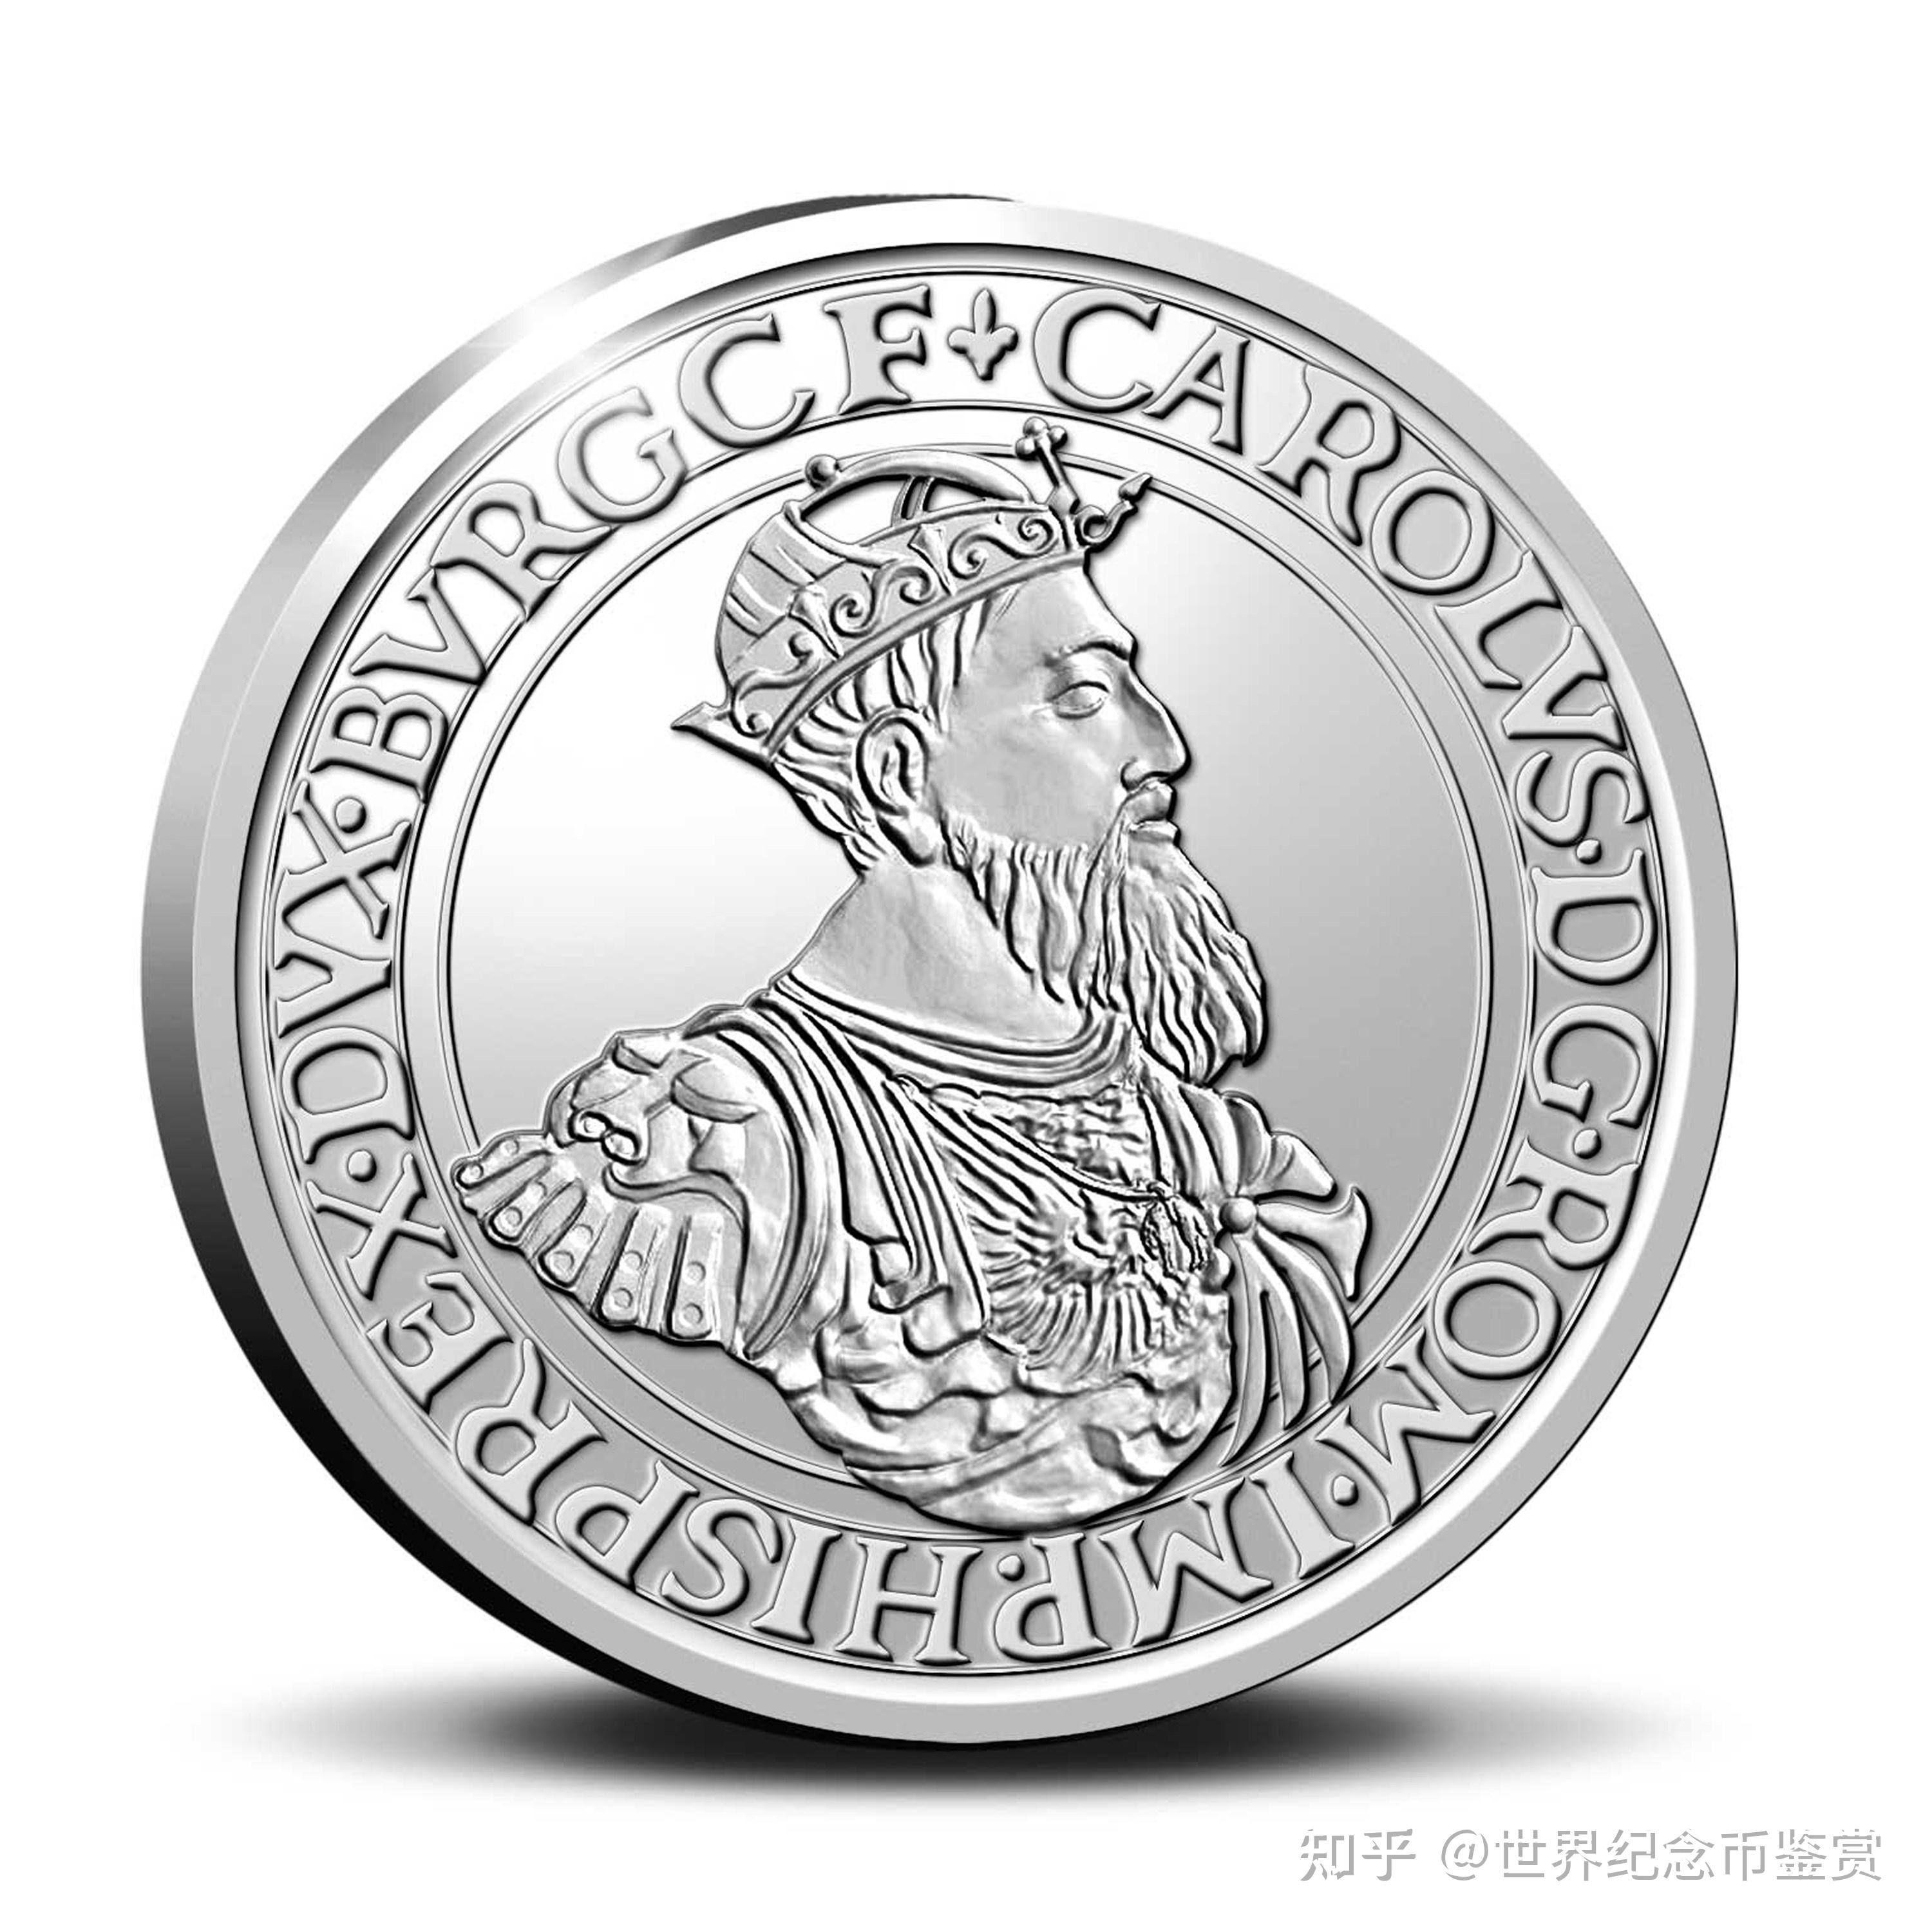 卡洛斯银盾2021年比利时10欧元银币